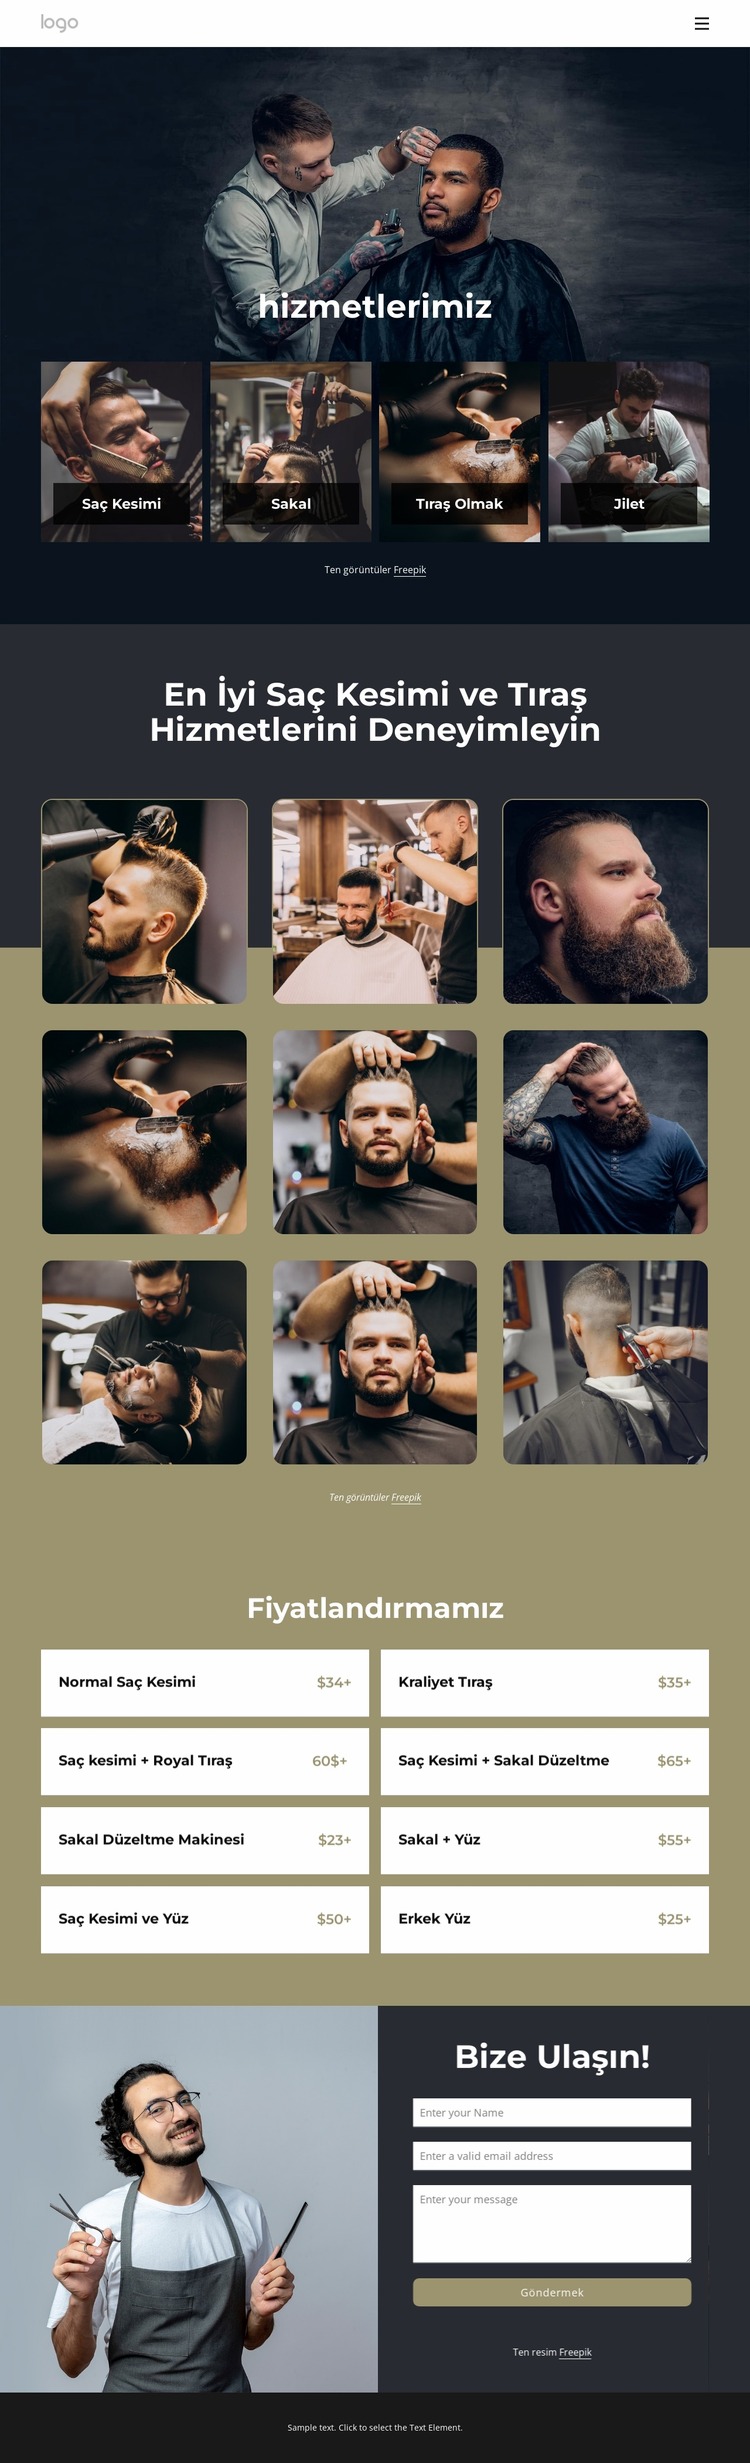 En iyi saç kesimi ve tıraş hizmetleri Joomla Şablonu